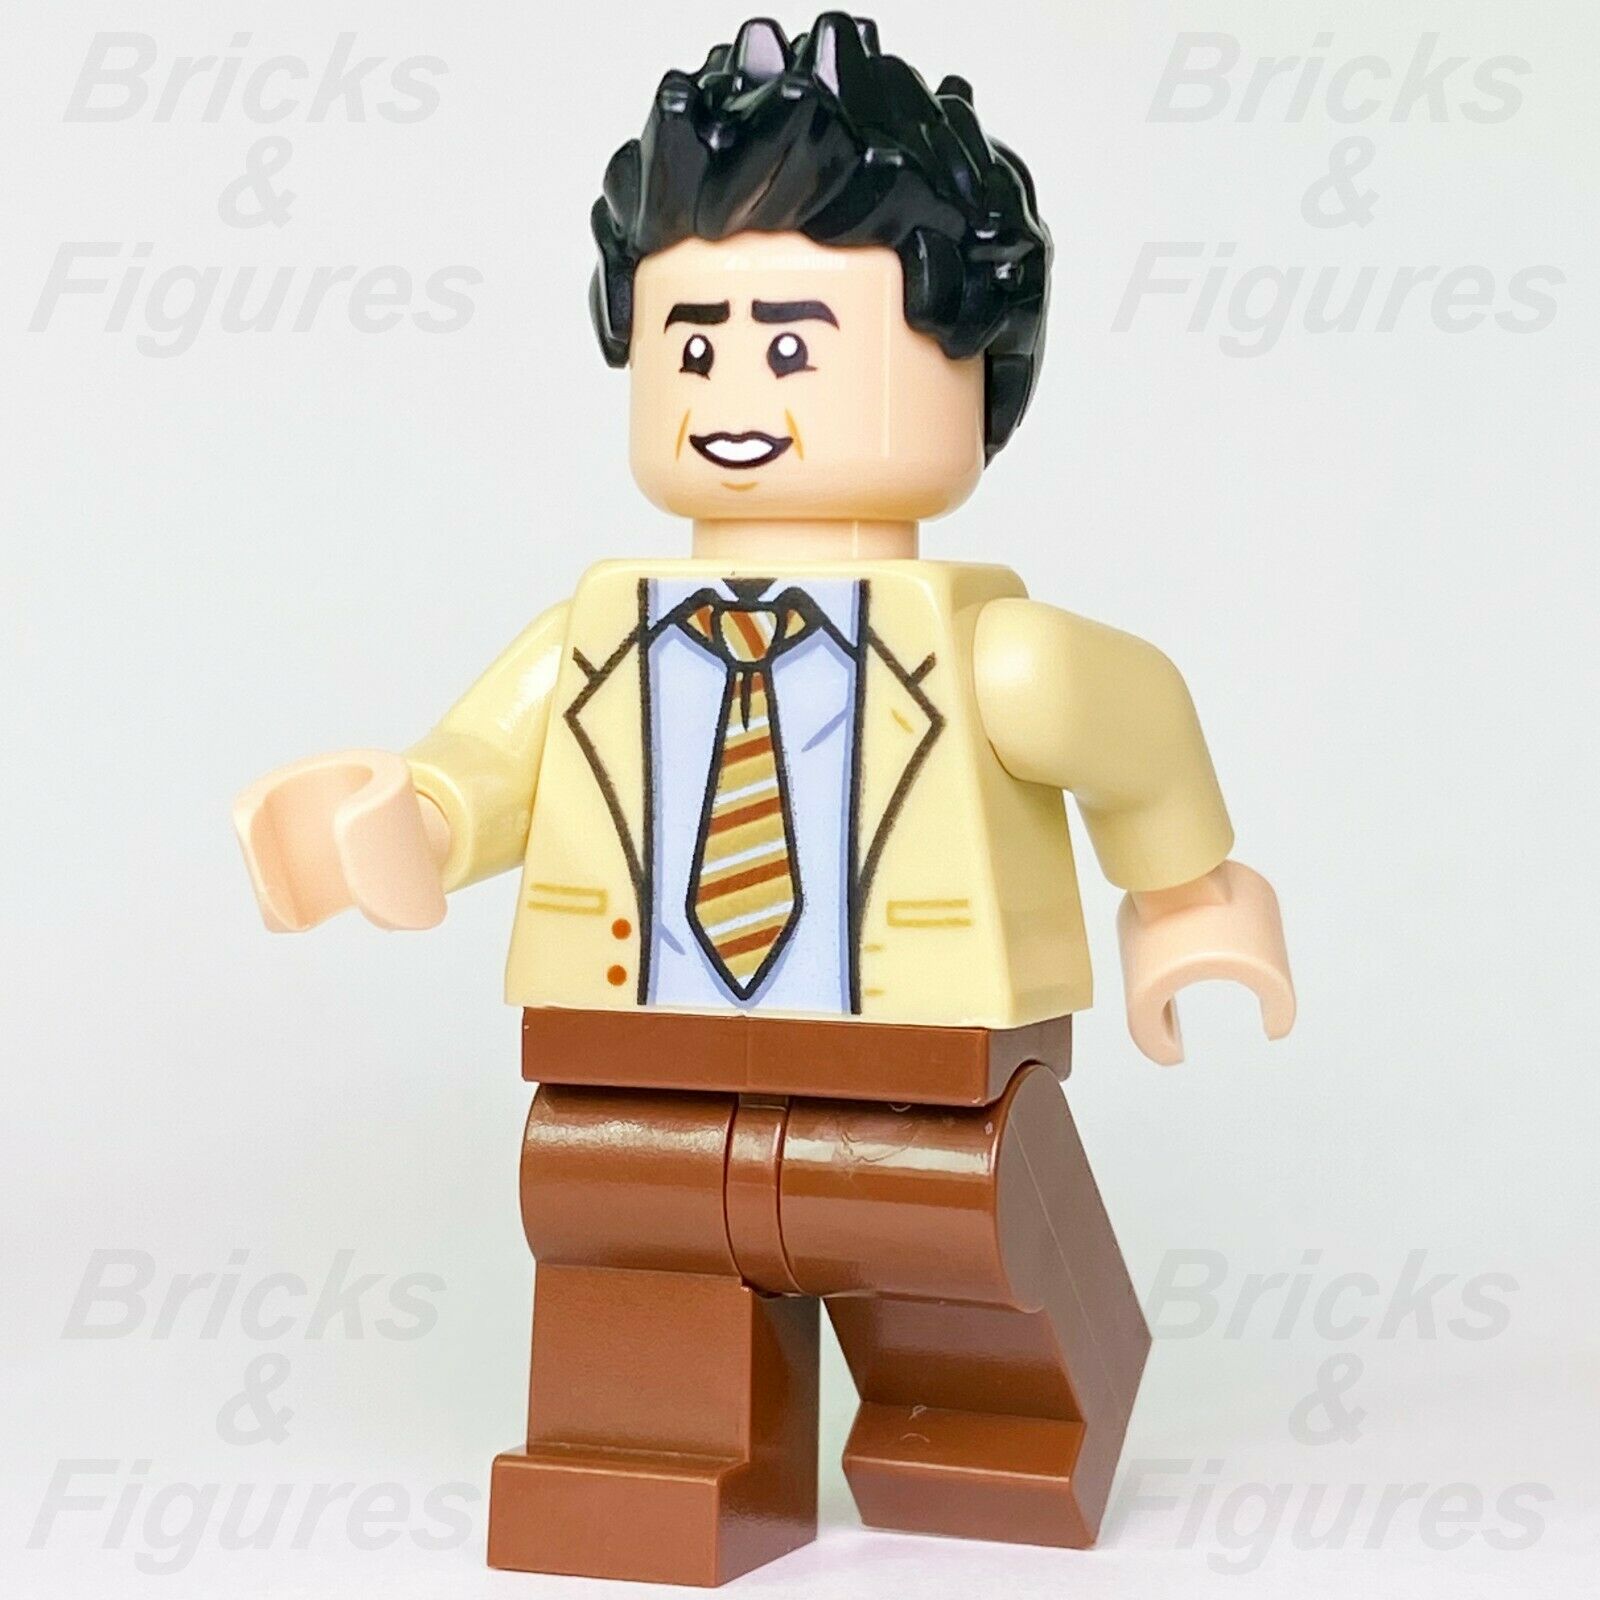 Ideas LEGO Ross Geller F·R·I·E·N·D·S (Friends) TV Show Minifigure 21319 - Bricks & Figures